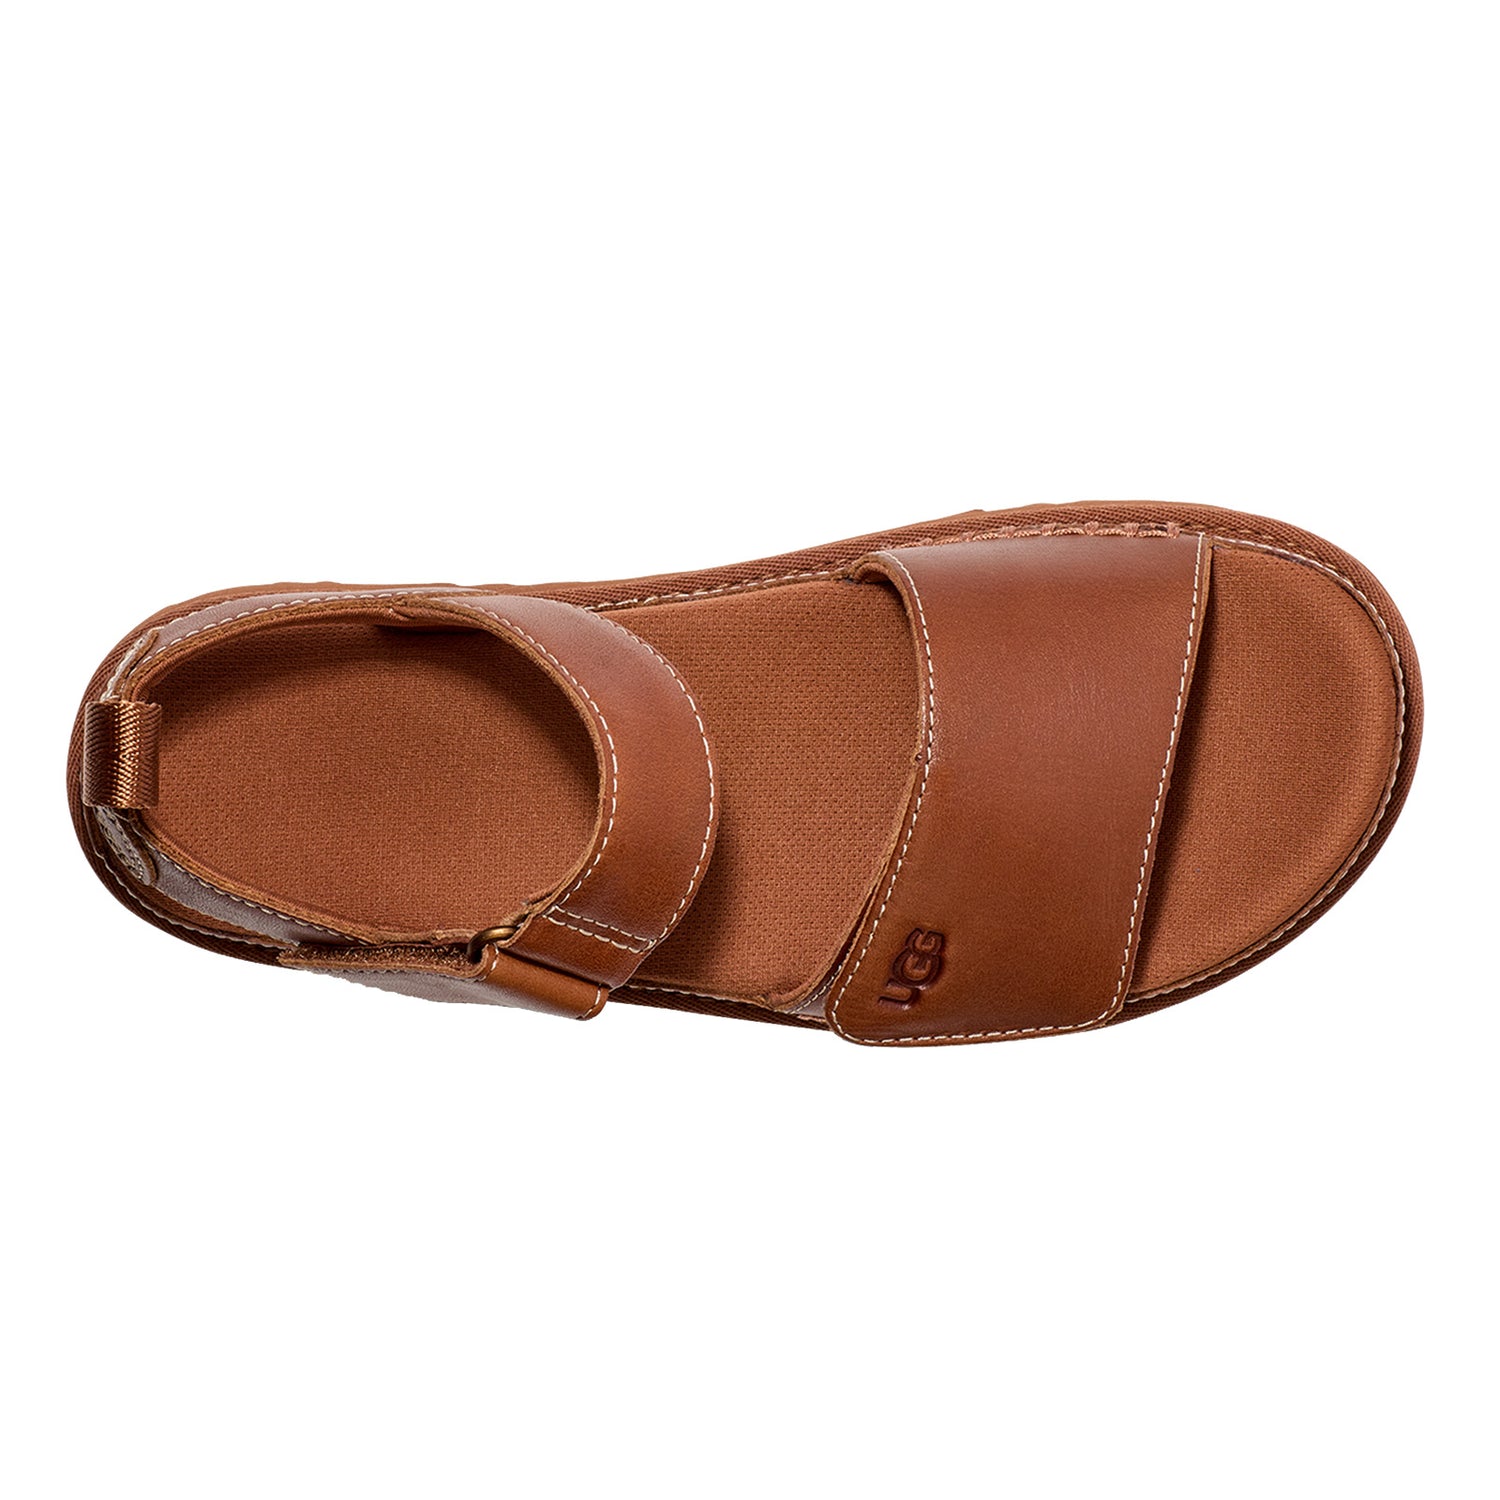 Peltz Shoes  Women's Ugg Goldenstar Platform Sandal Tan 1156431-TAN